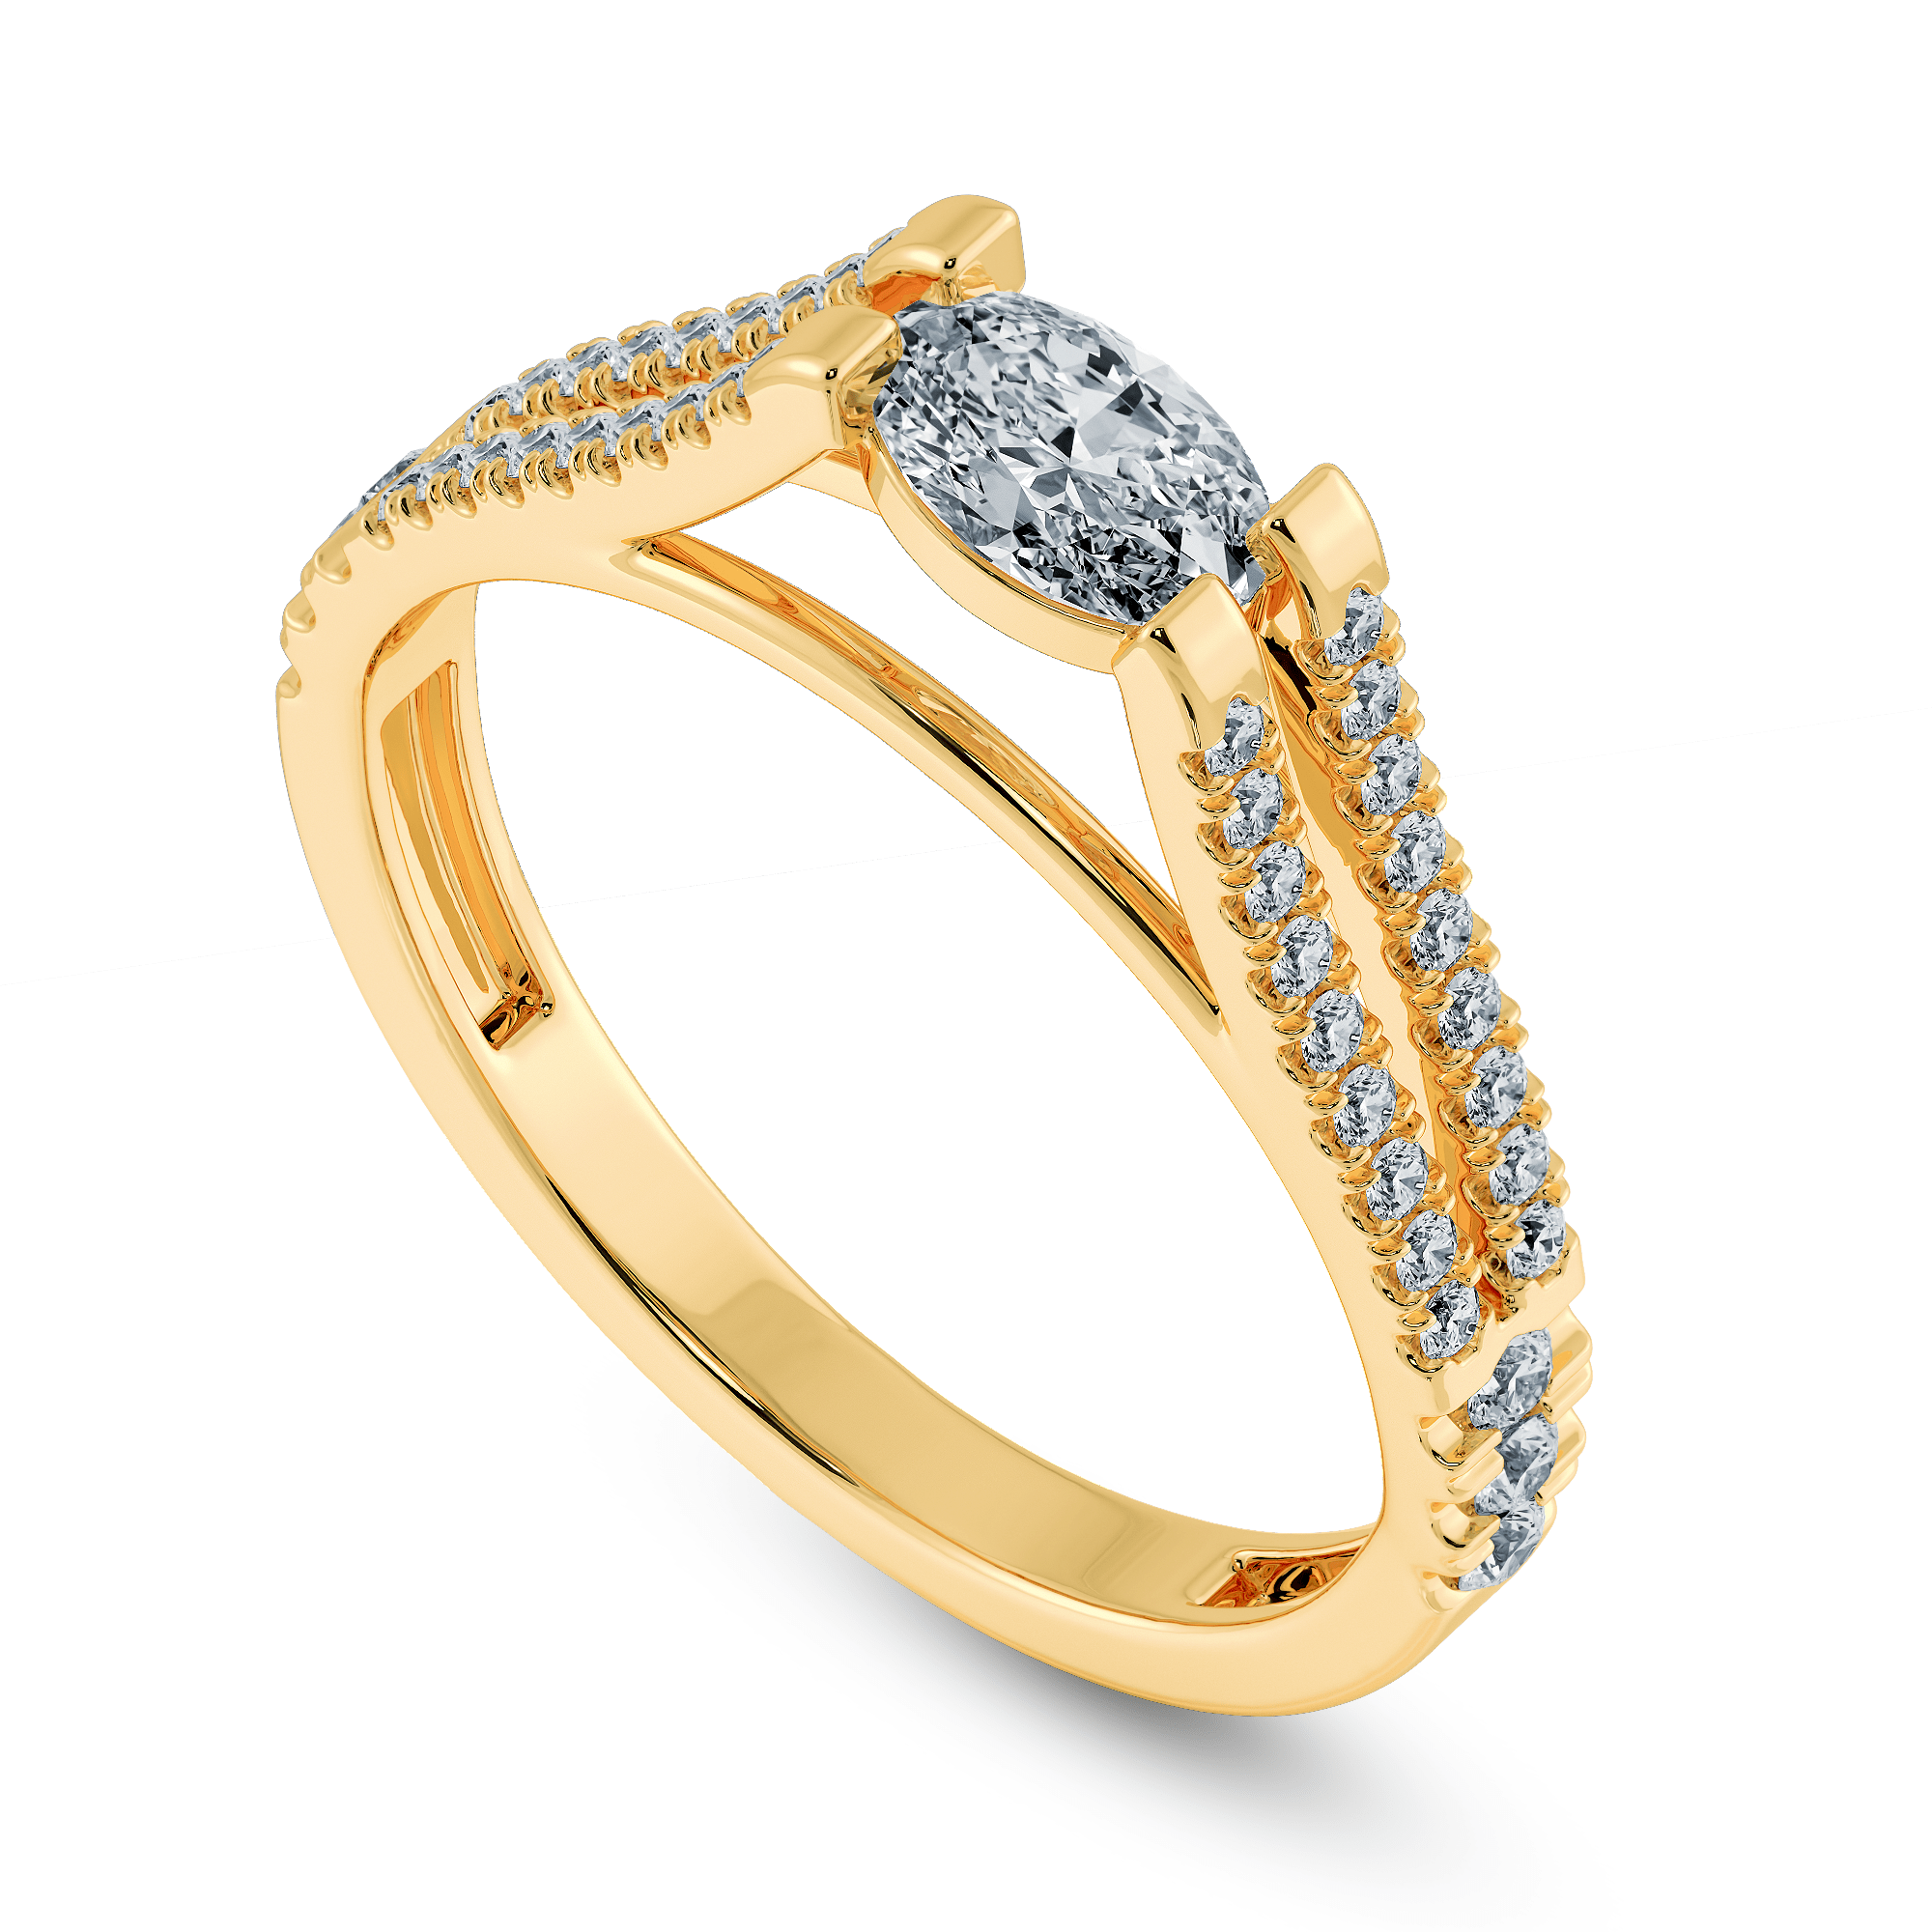 Buy Dainty 14KT Yellow Gold Finger Ring Online | ORRA